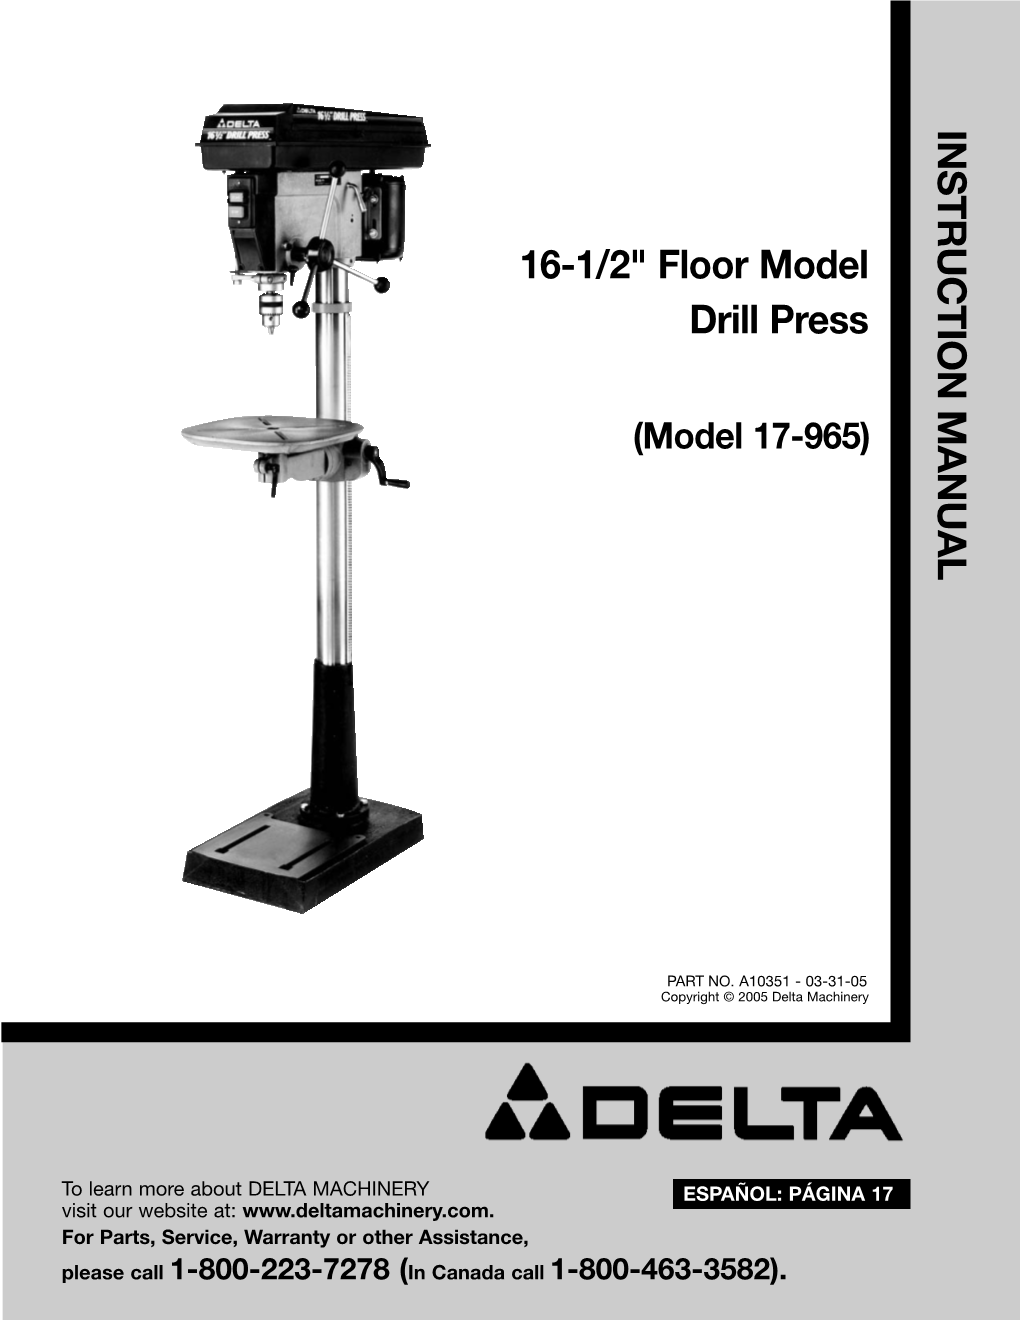 INSTRUCTION MANUAL 16-1/2" Floor Model Drill Press